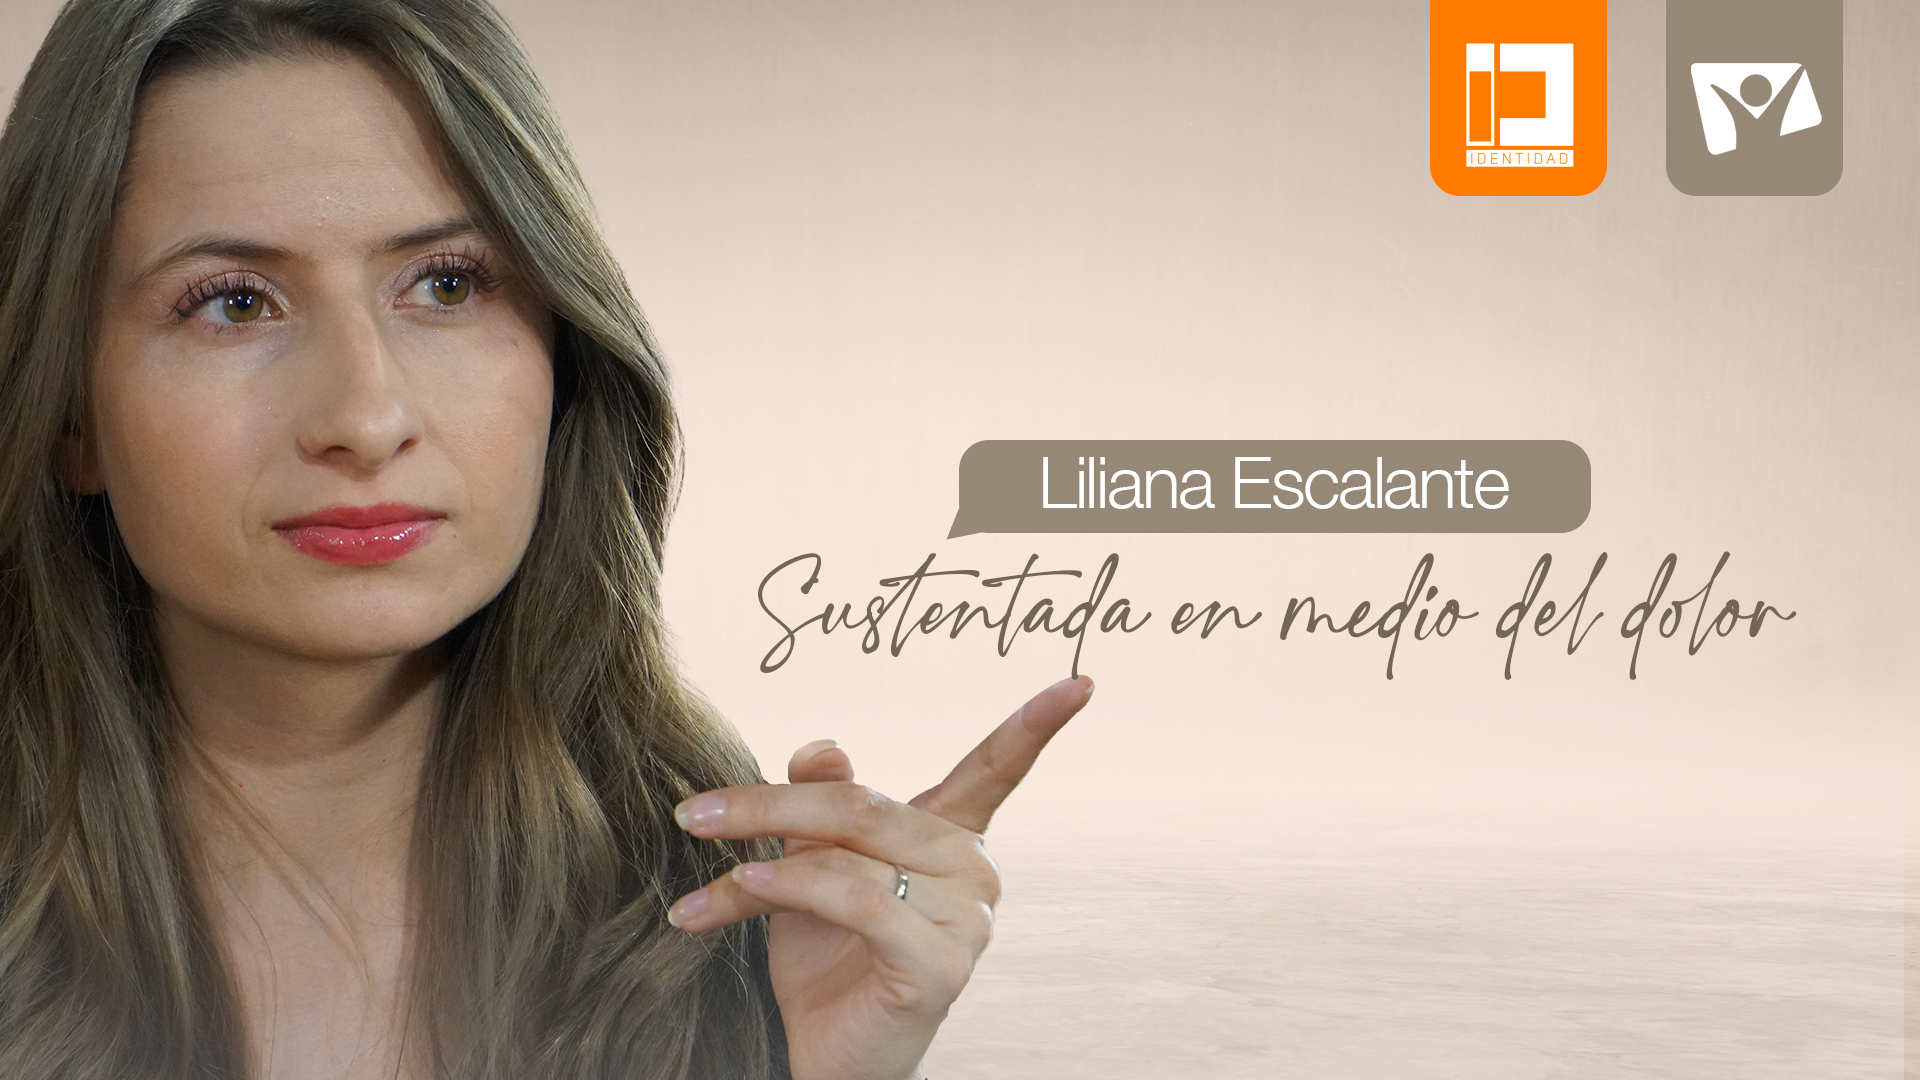 Sustentada en medio del dolor, Liliana Escalante